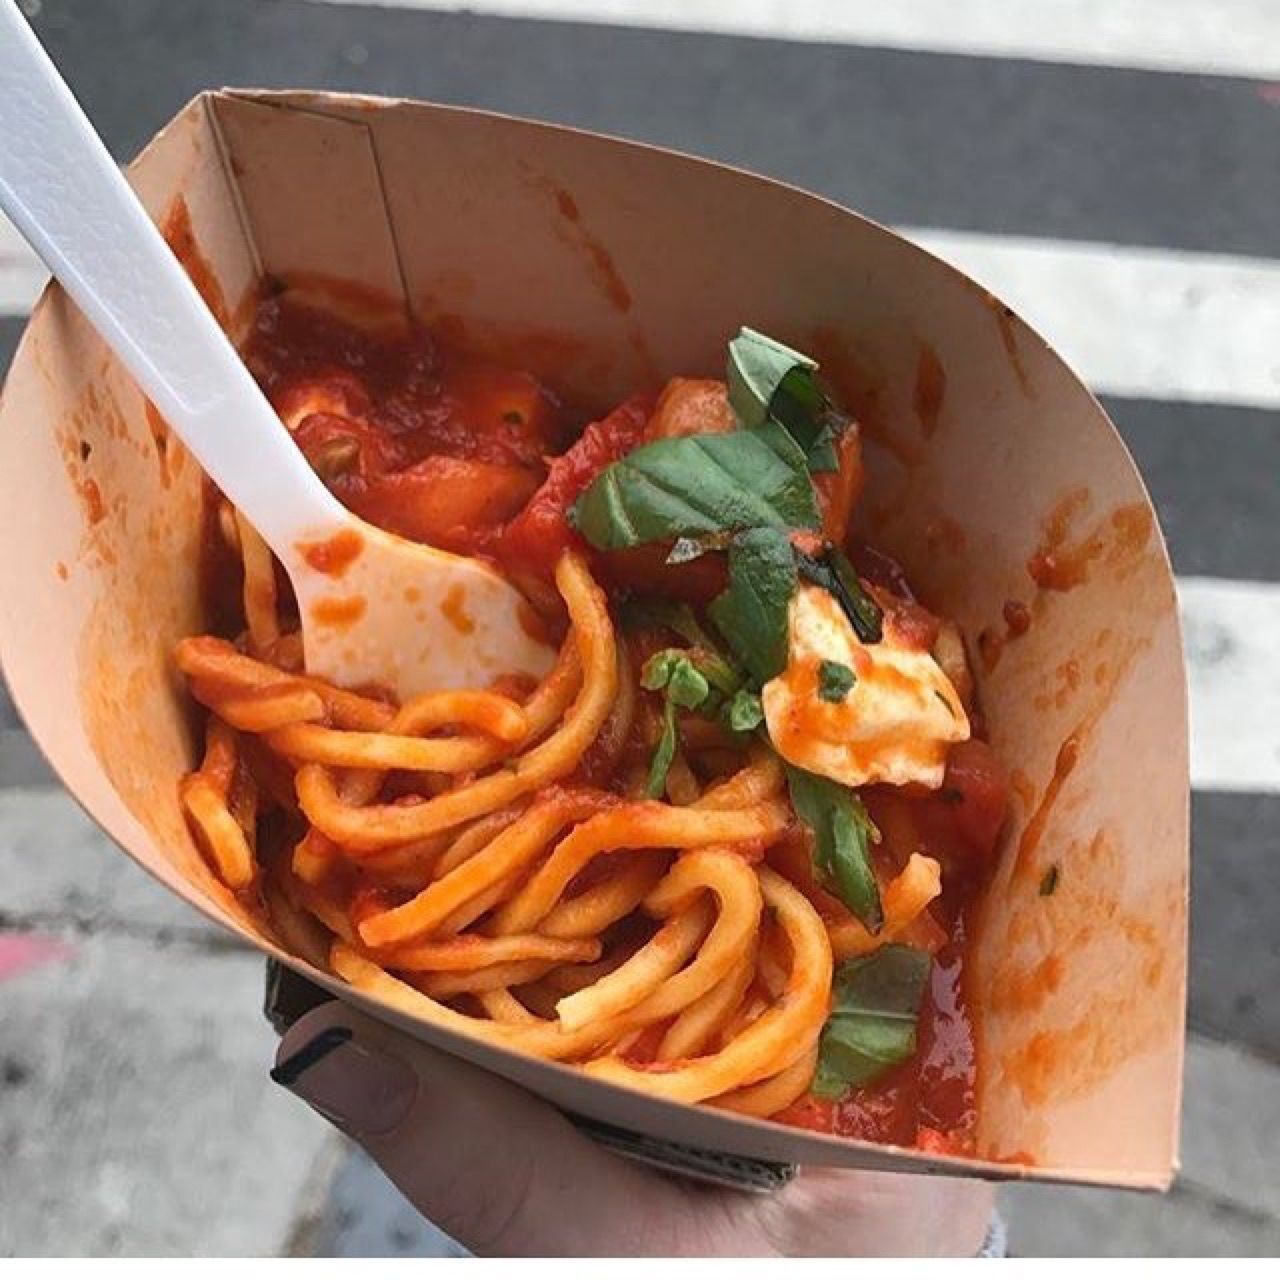 The Spaghetti Incident? - Wikipedia